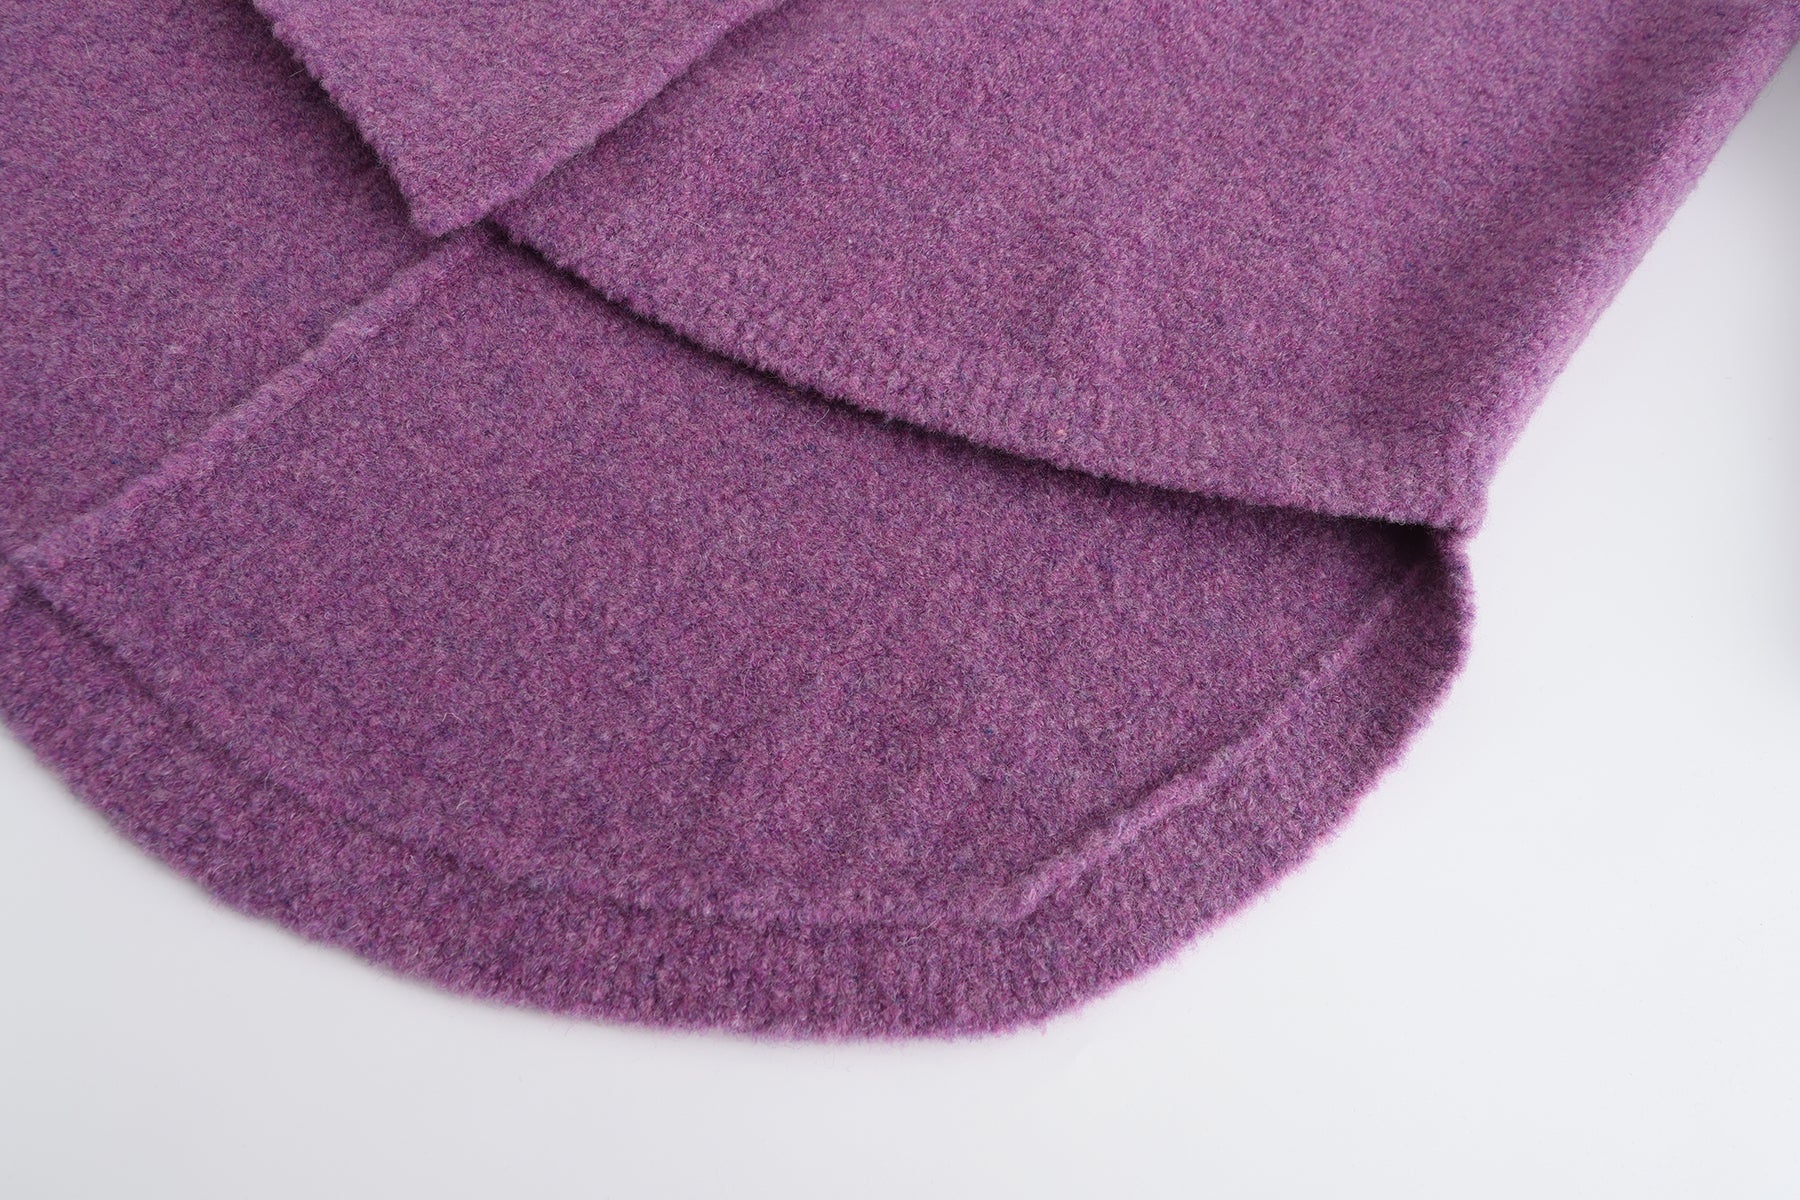 泰迪針織開襟衫 - 紫色